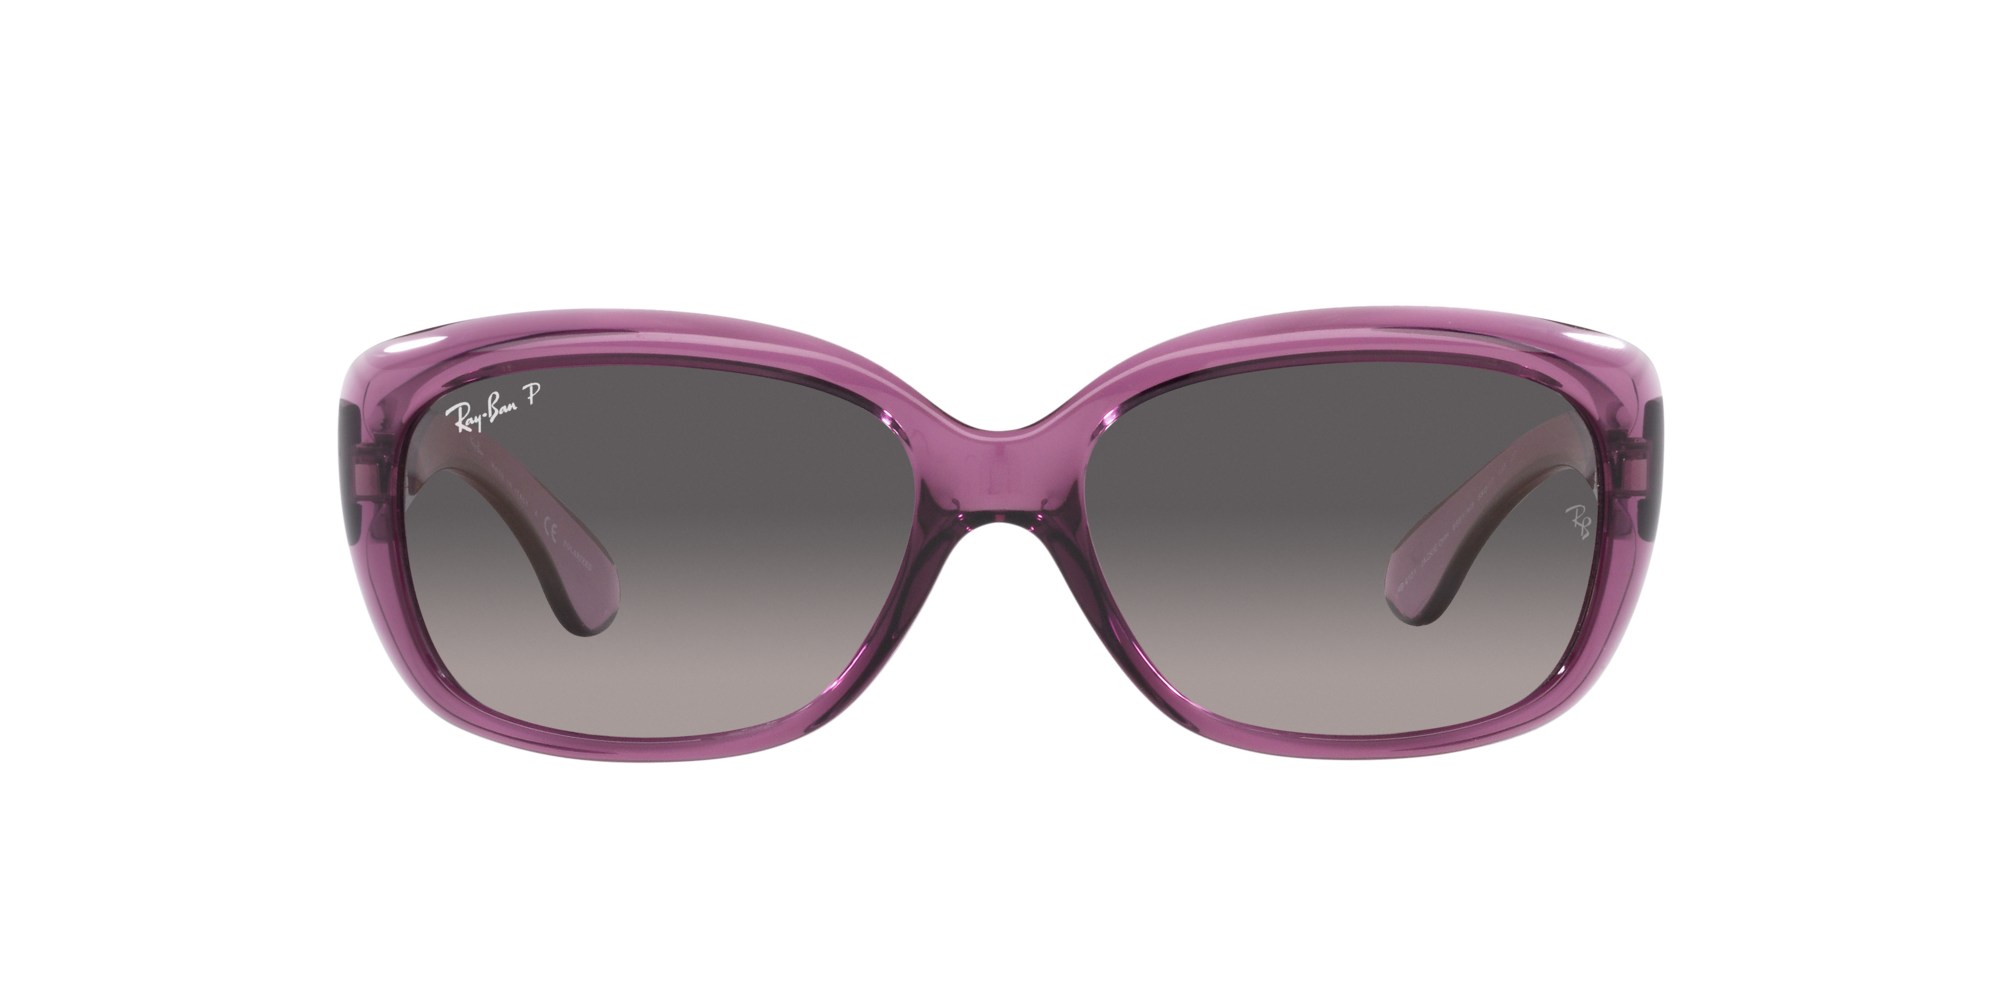 Jackie ohh Ray Ban Sonnenbrille für Damen in Violett/Transparent RB4101 6591M3 58